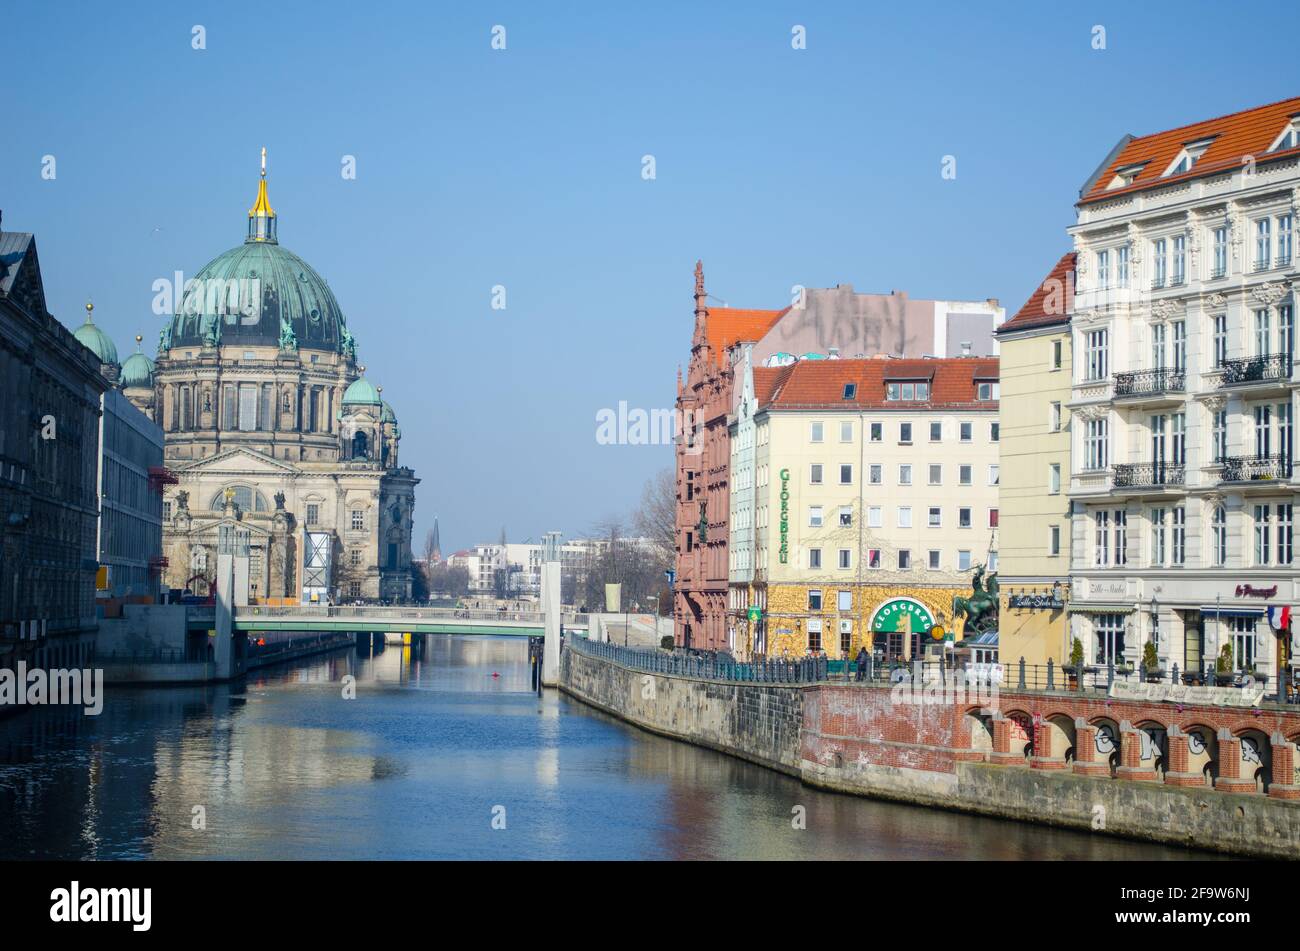 BERLIN, DEUTSCHLAND, 12. MÄRZ 2015: Blick auf das Flussufer des Spree in berlin mit dem berühmten berliner Dom am anderen Ende Stockfoto